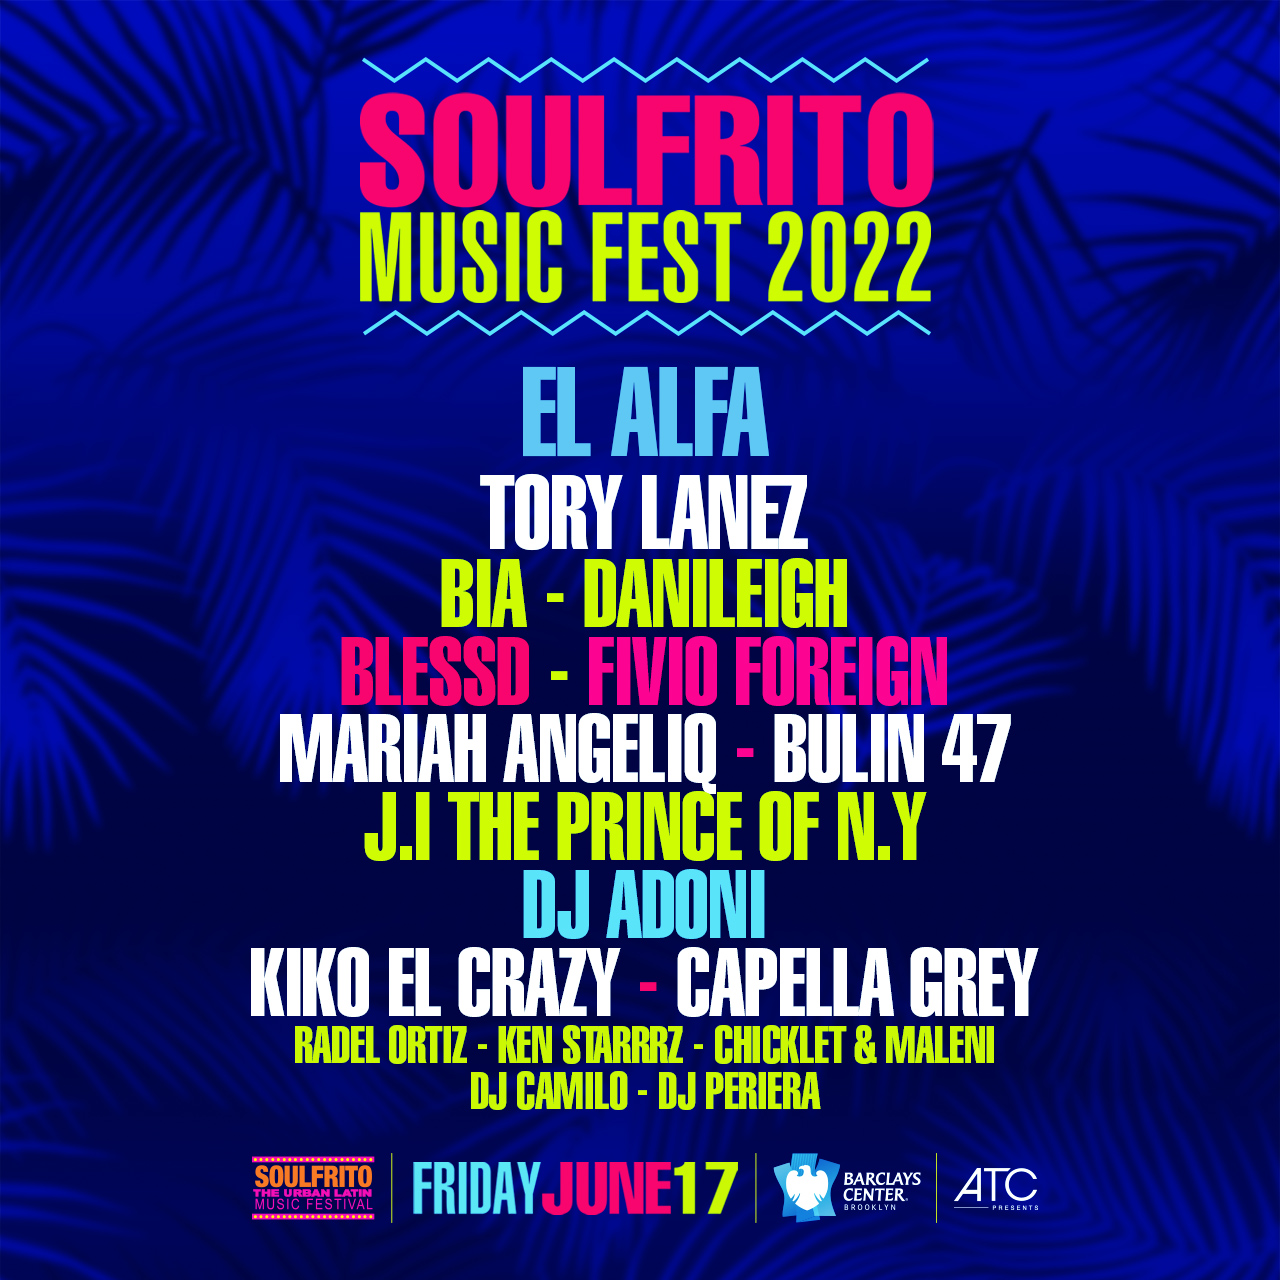 Soulfrito Music Festival 2022